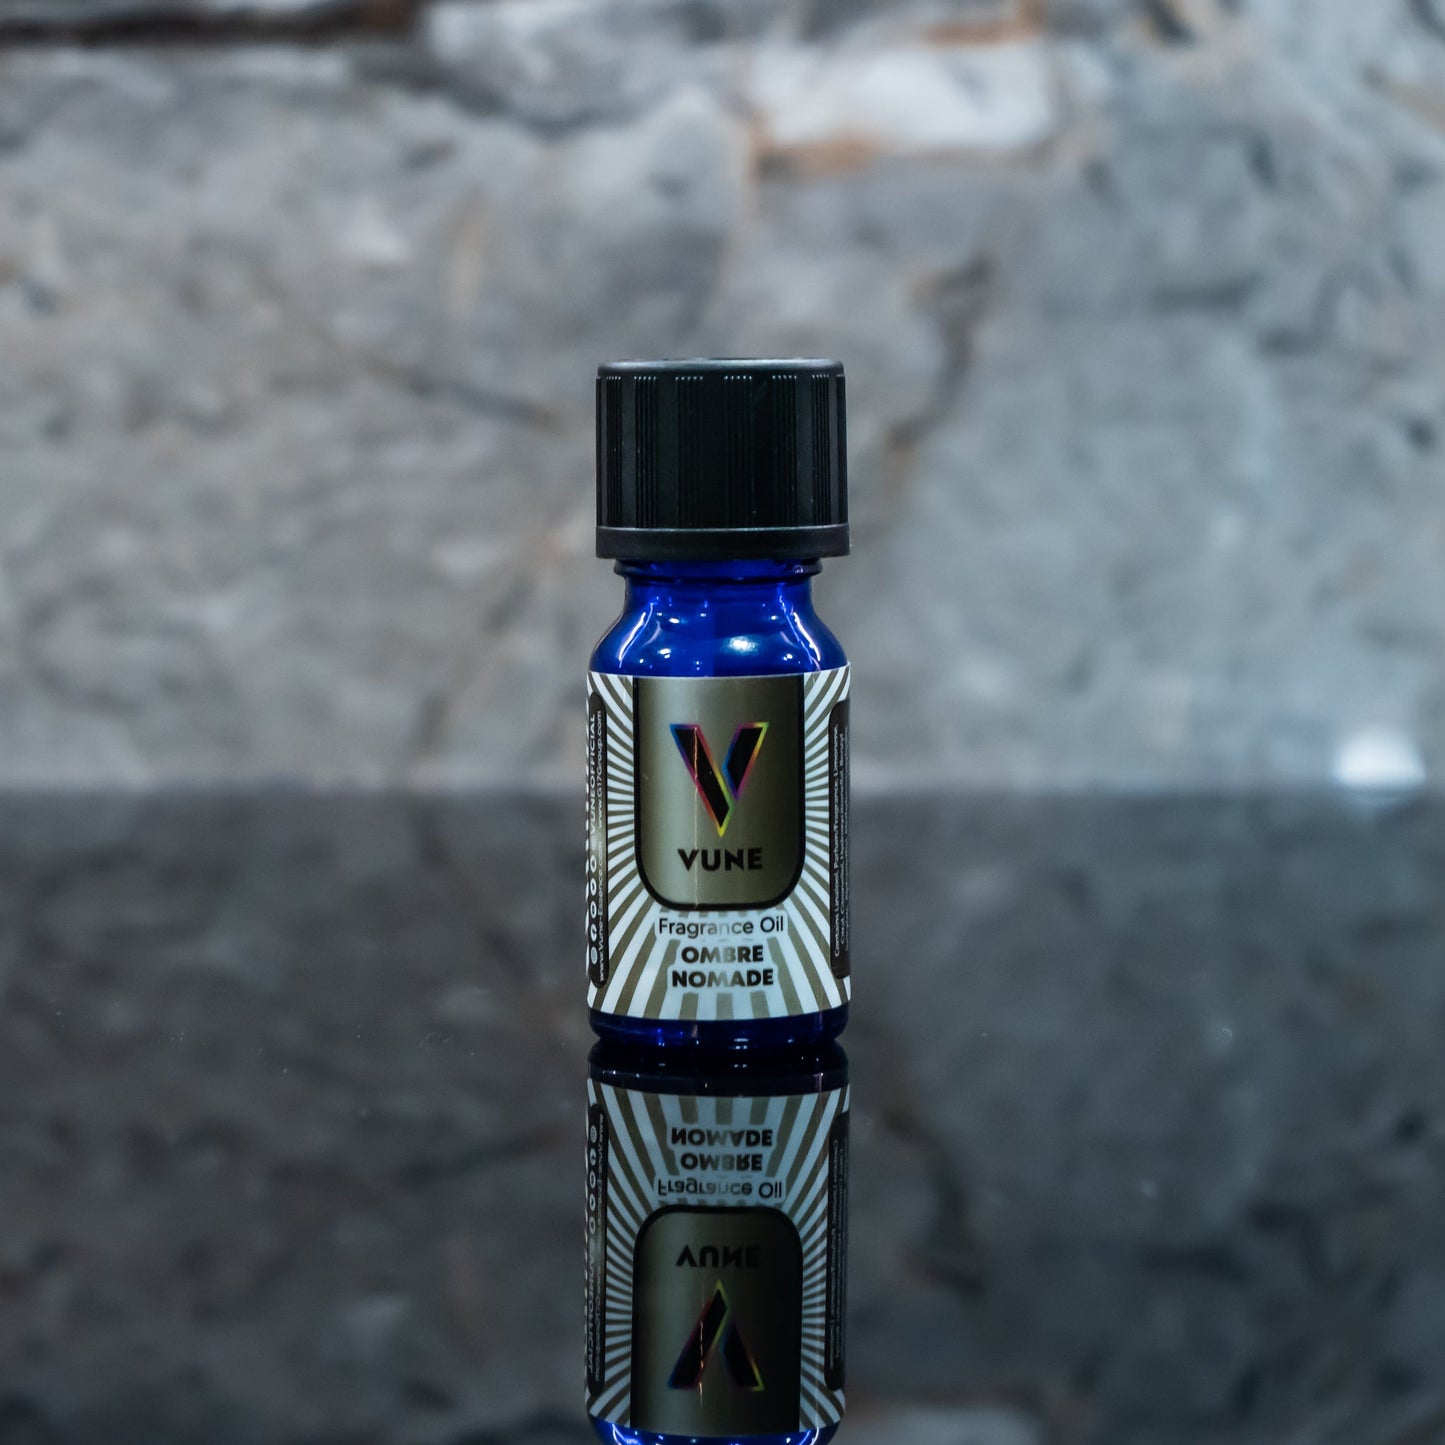 Vune Chromatic Noir Opium Fragrance Oil